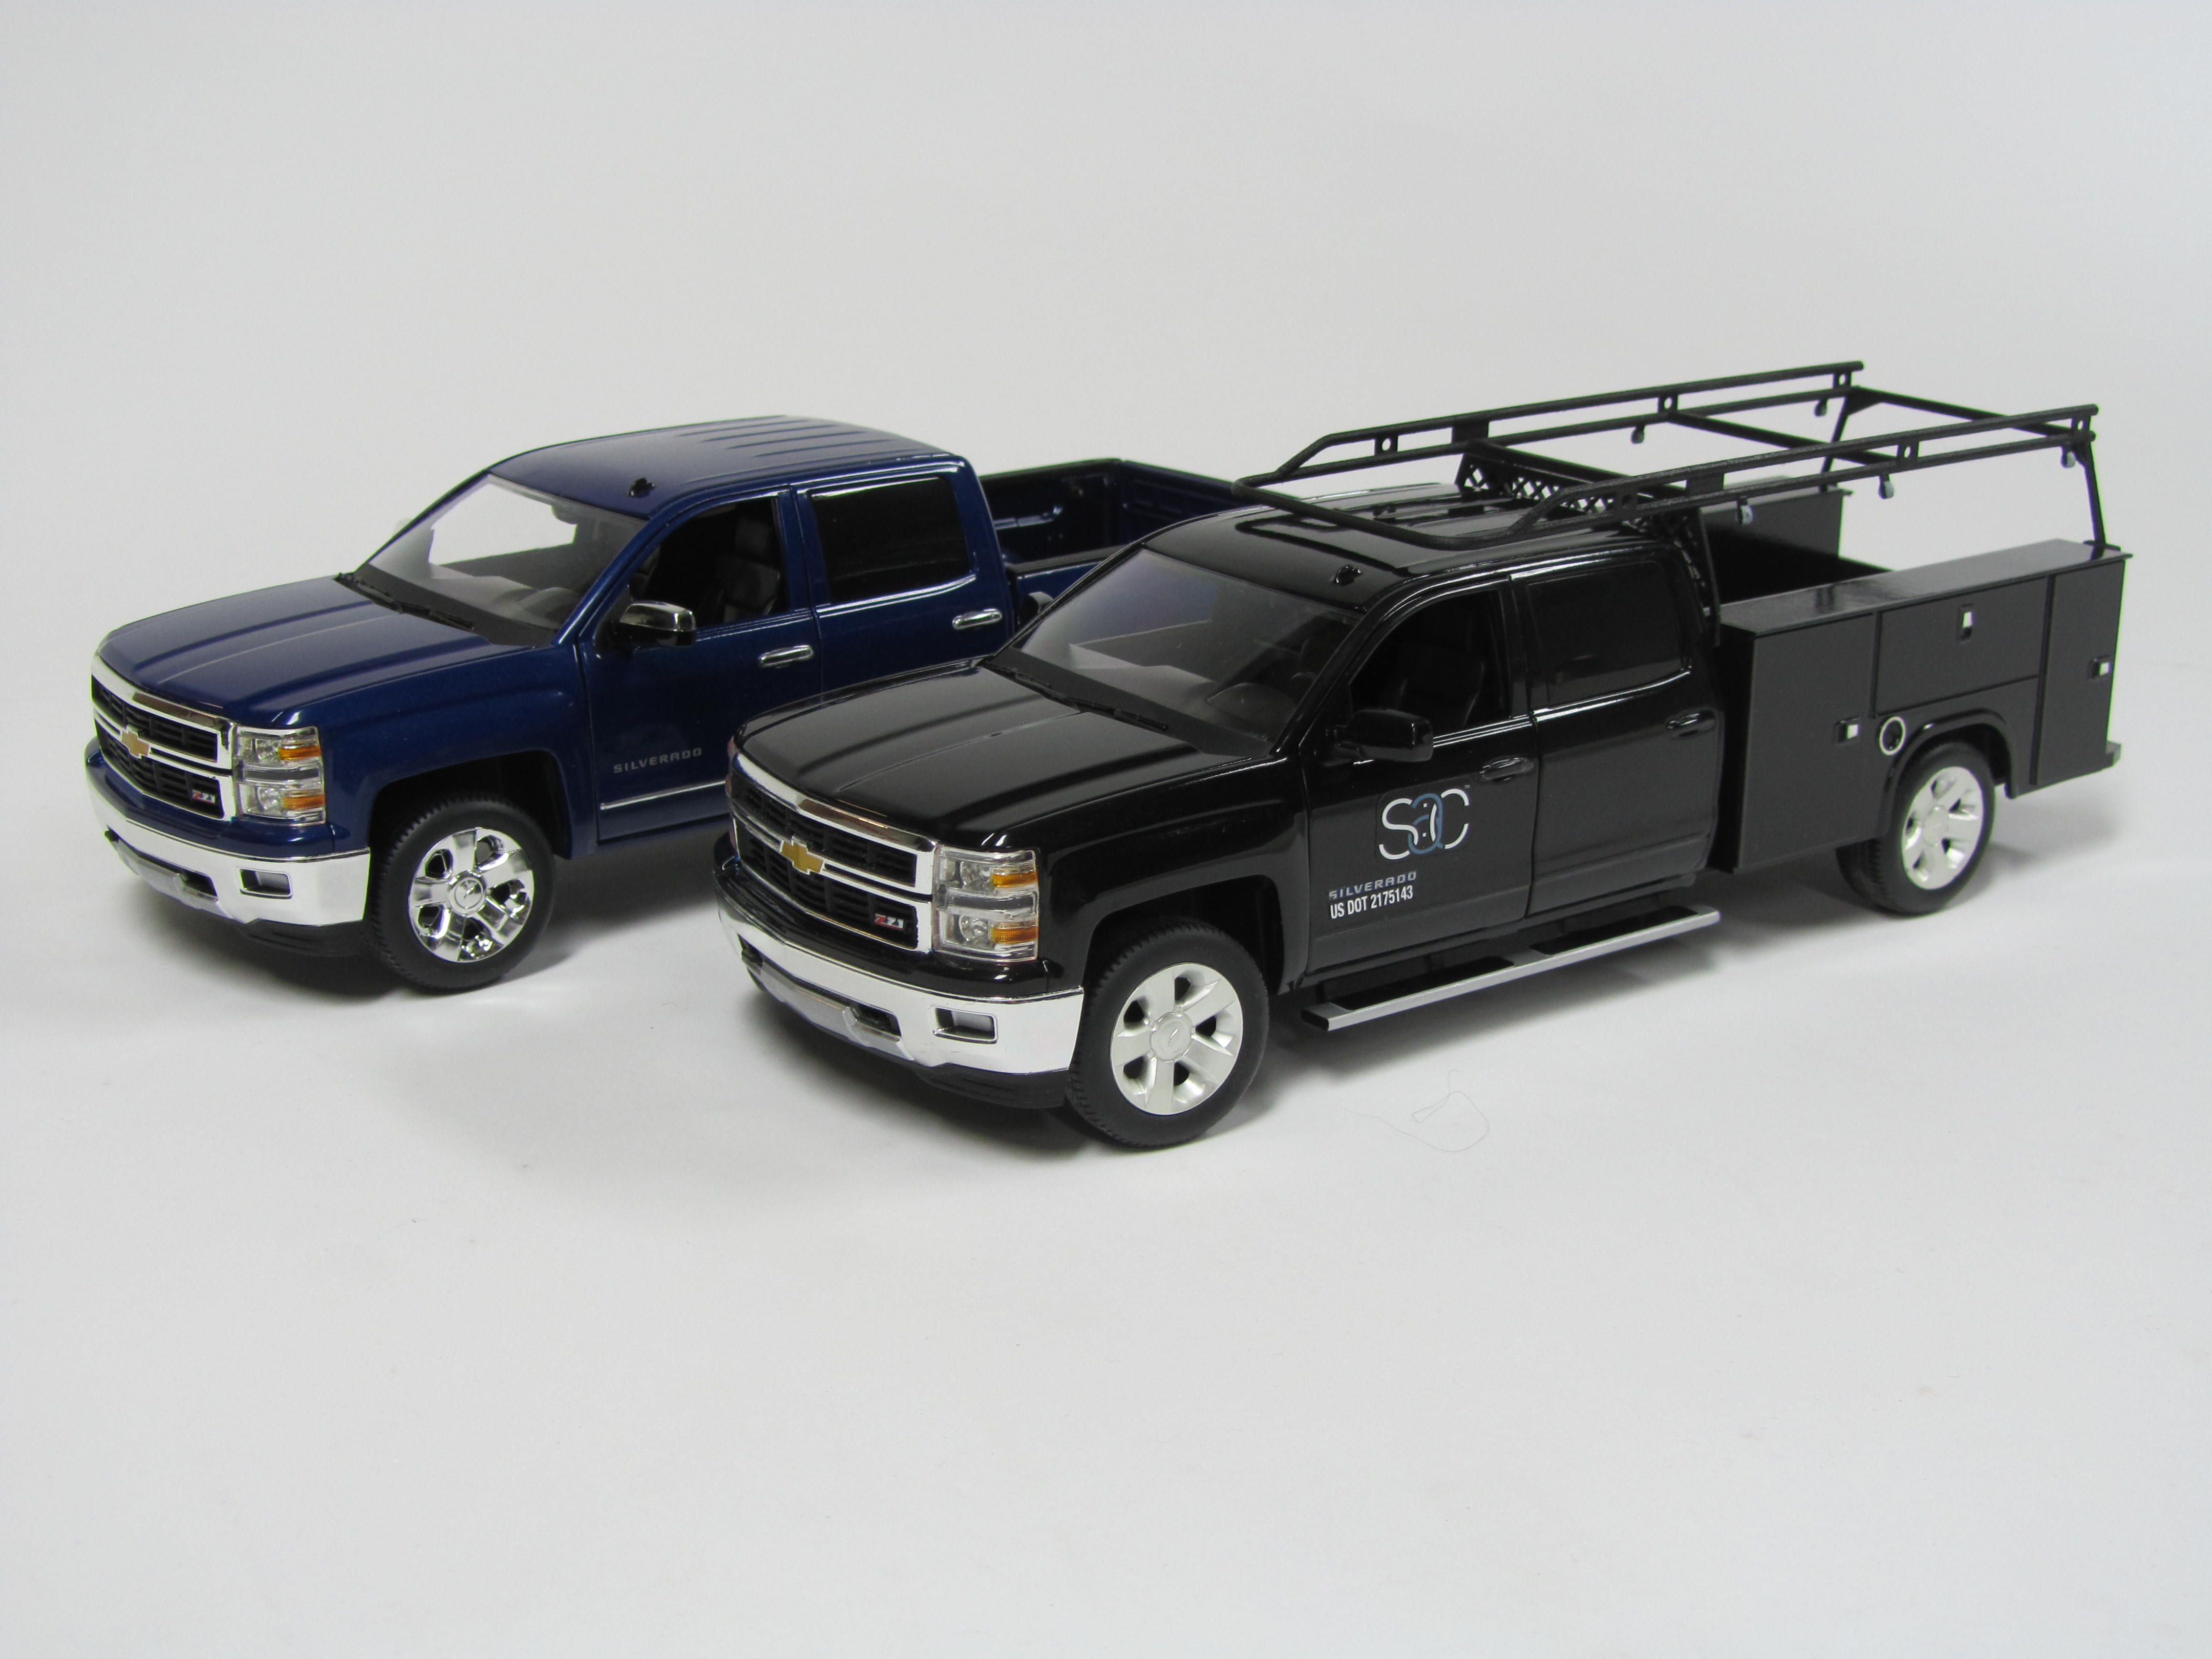 custom truck model